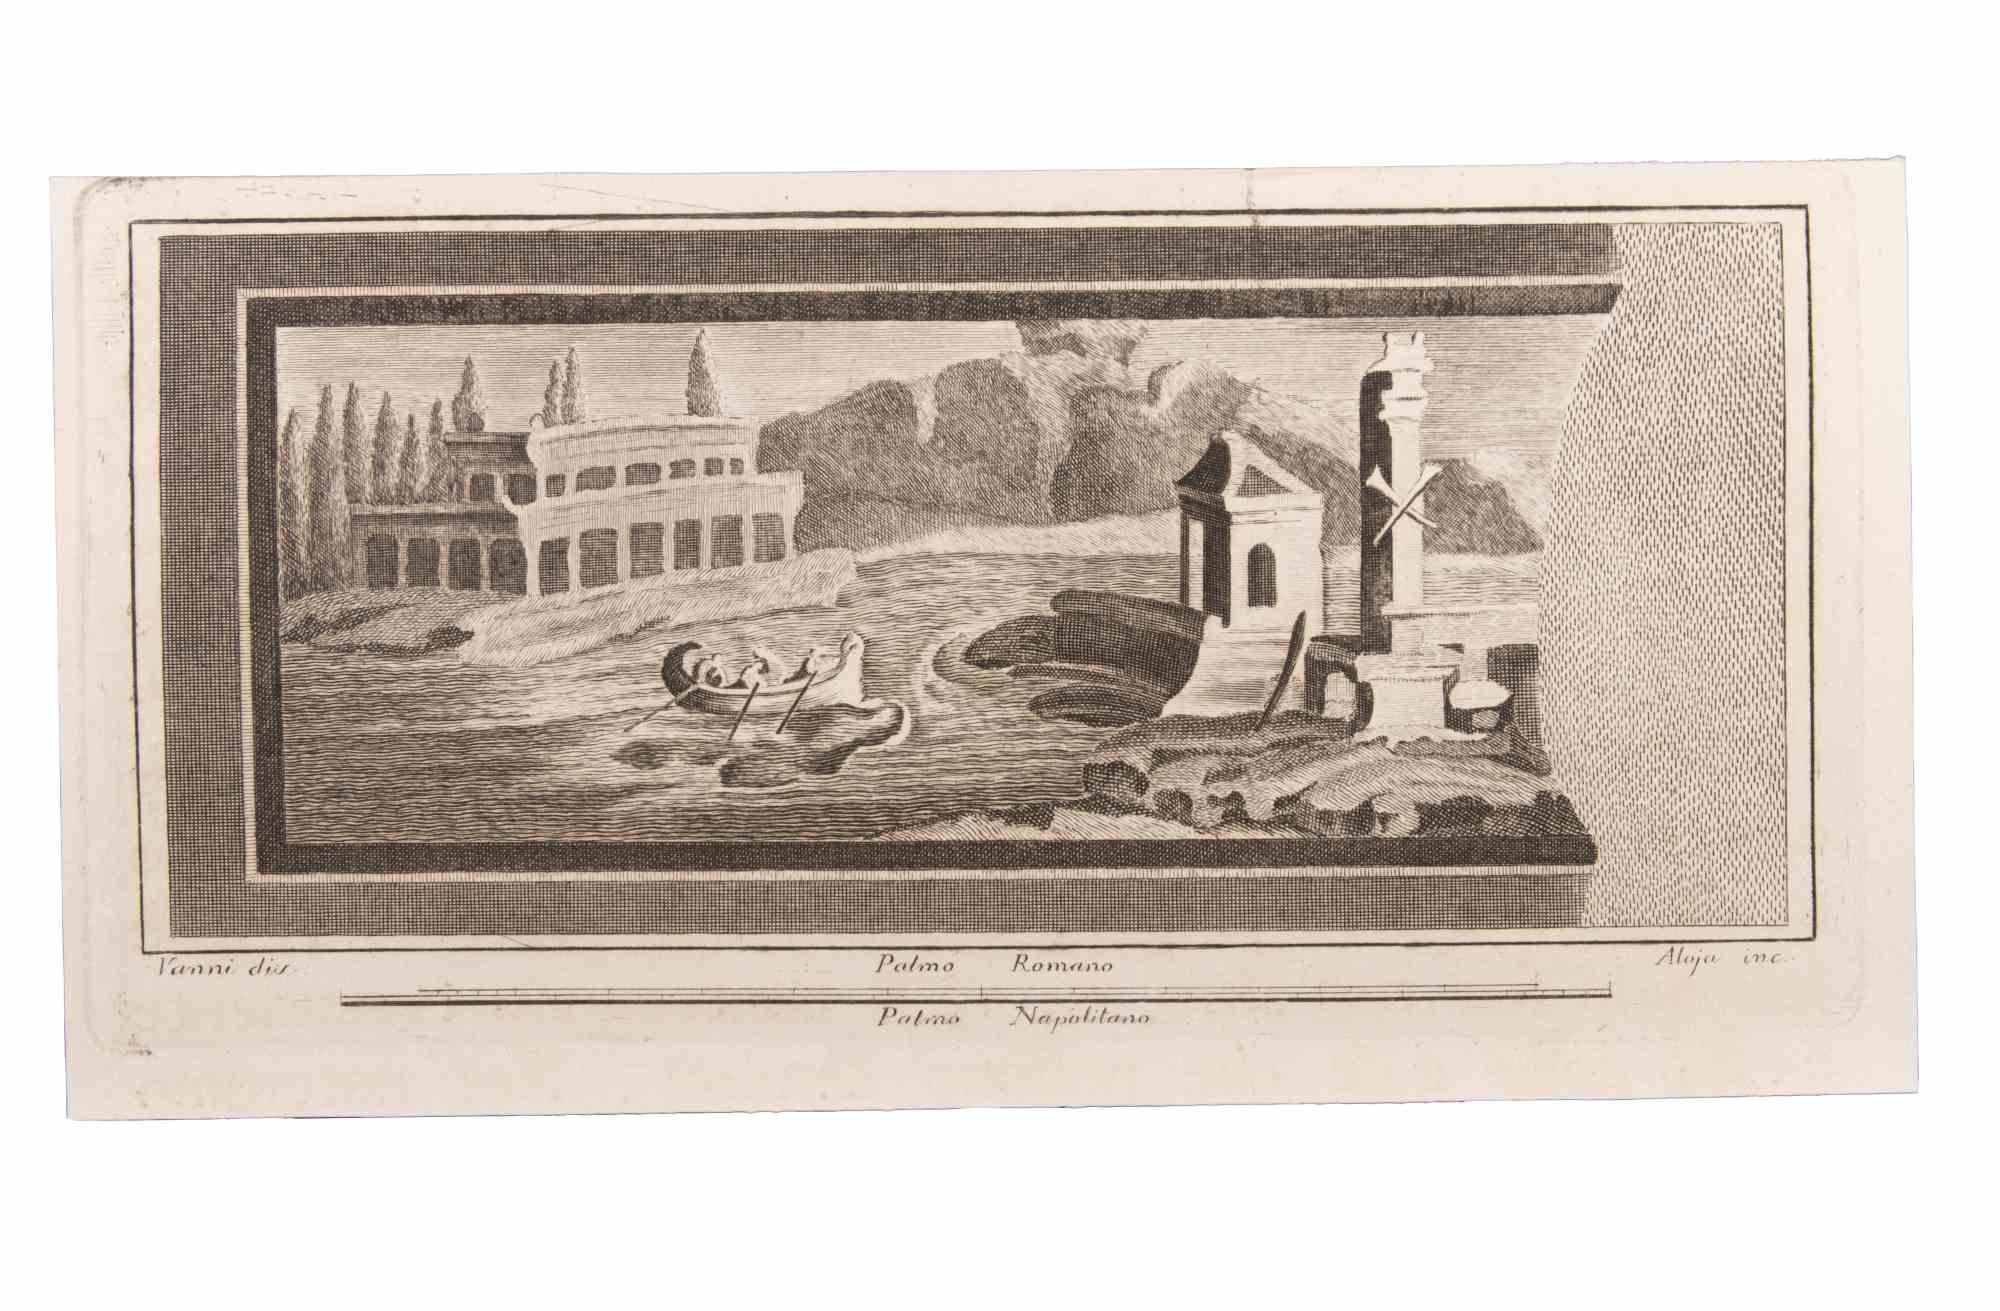 Seelandschaft mit Monument und Figuren ist eine Radierung von Luigi Aloja (1783-1837).

Die Radierung gehört zu der Druckserie "Antiquities of Herculaneum Exposed" (Originaltitel: "Le Antichità di Ercolano Esposte"), einem achtbändigen Band mit